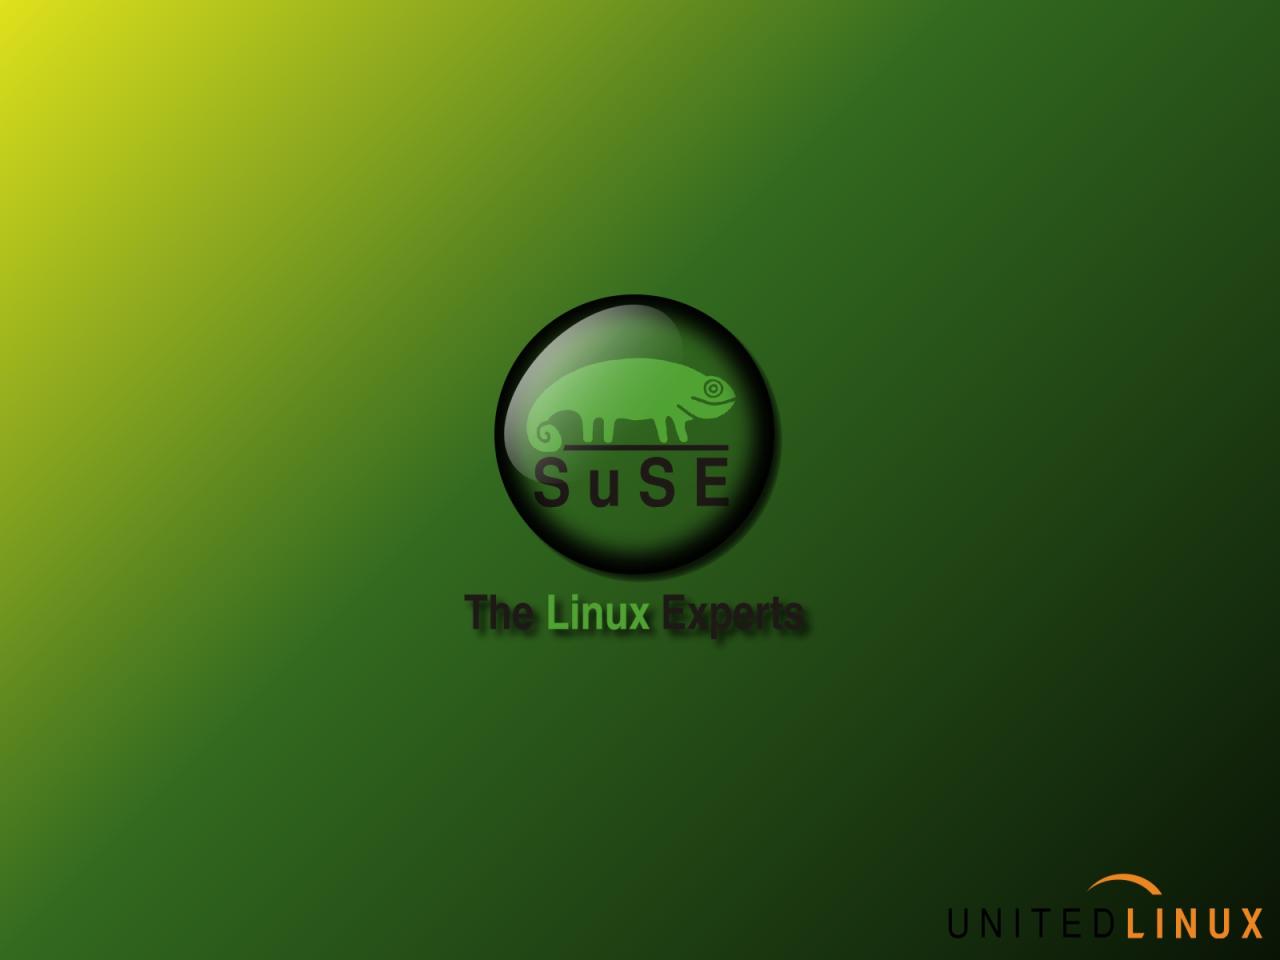 Suse Wallpaper Next Image Xp Linux